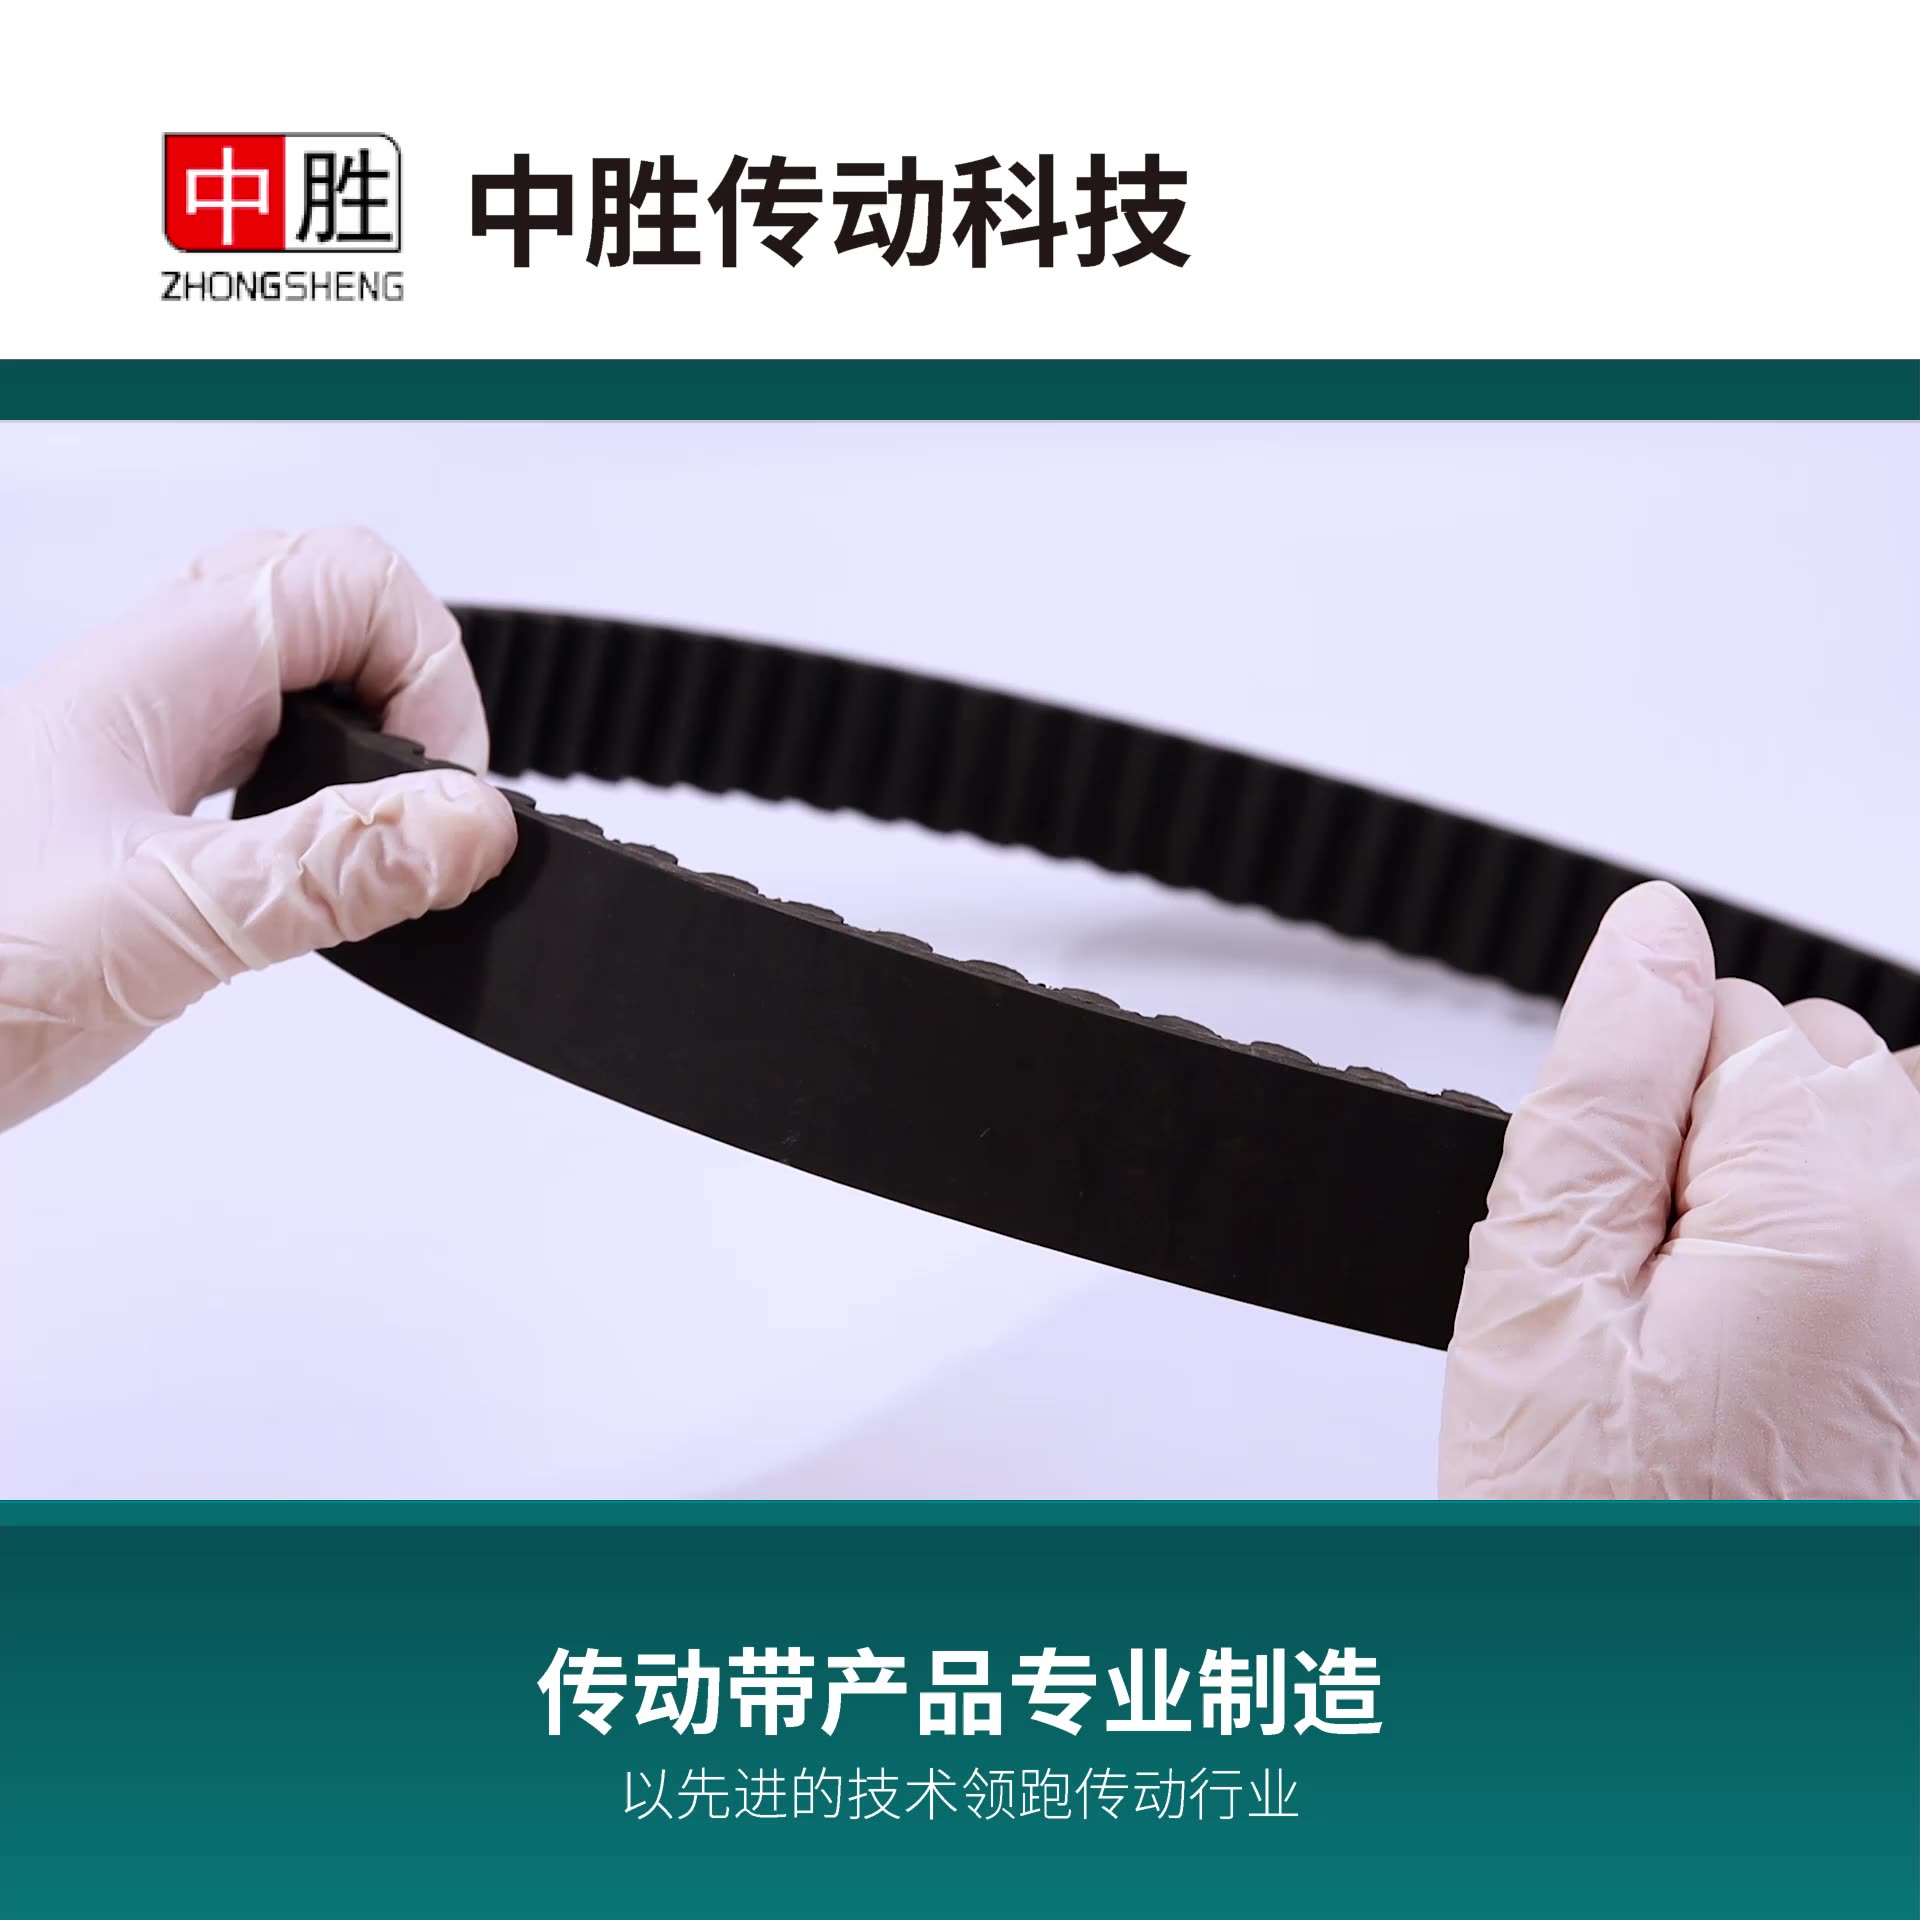 Industrial Rubber Belts1